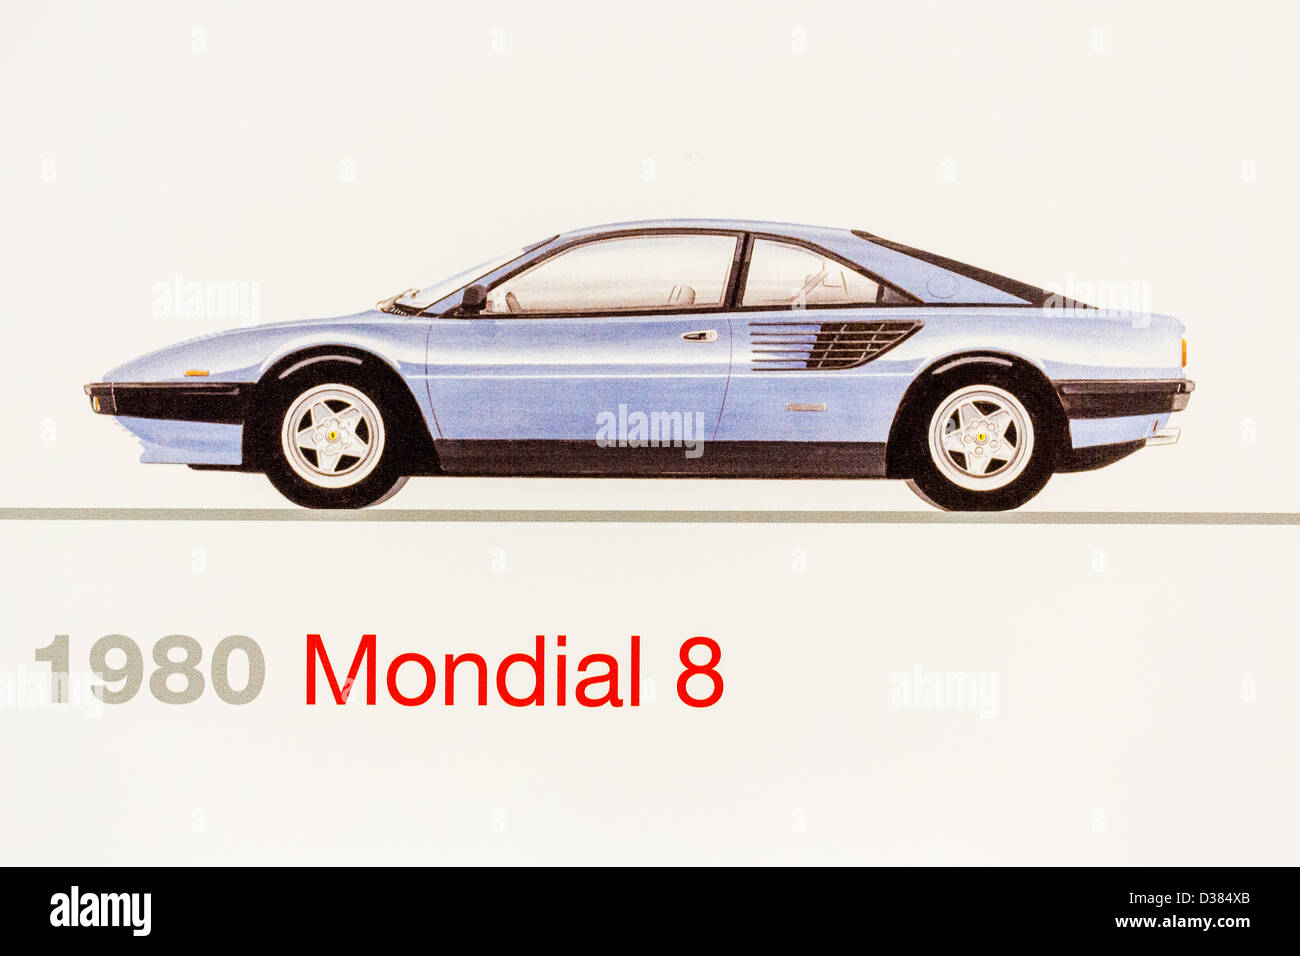 Graphic representation of a 1980 Ferrari Mondial 8, Ferrari Museum, Maranello, Italy Stock Photo